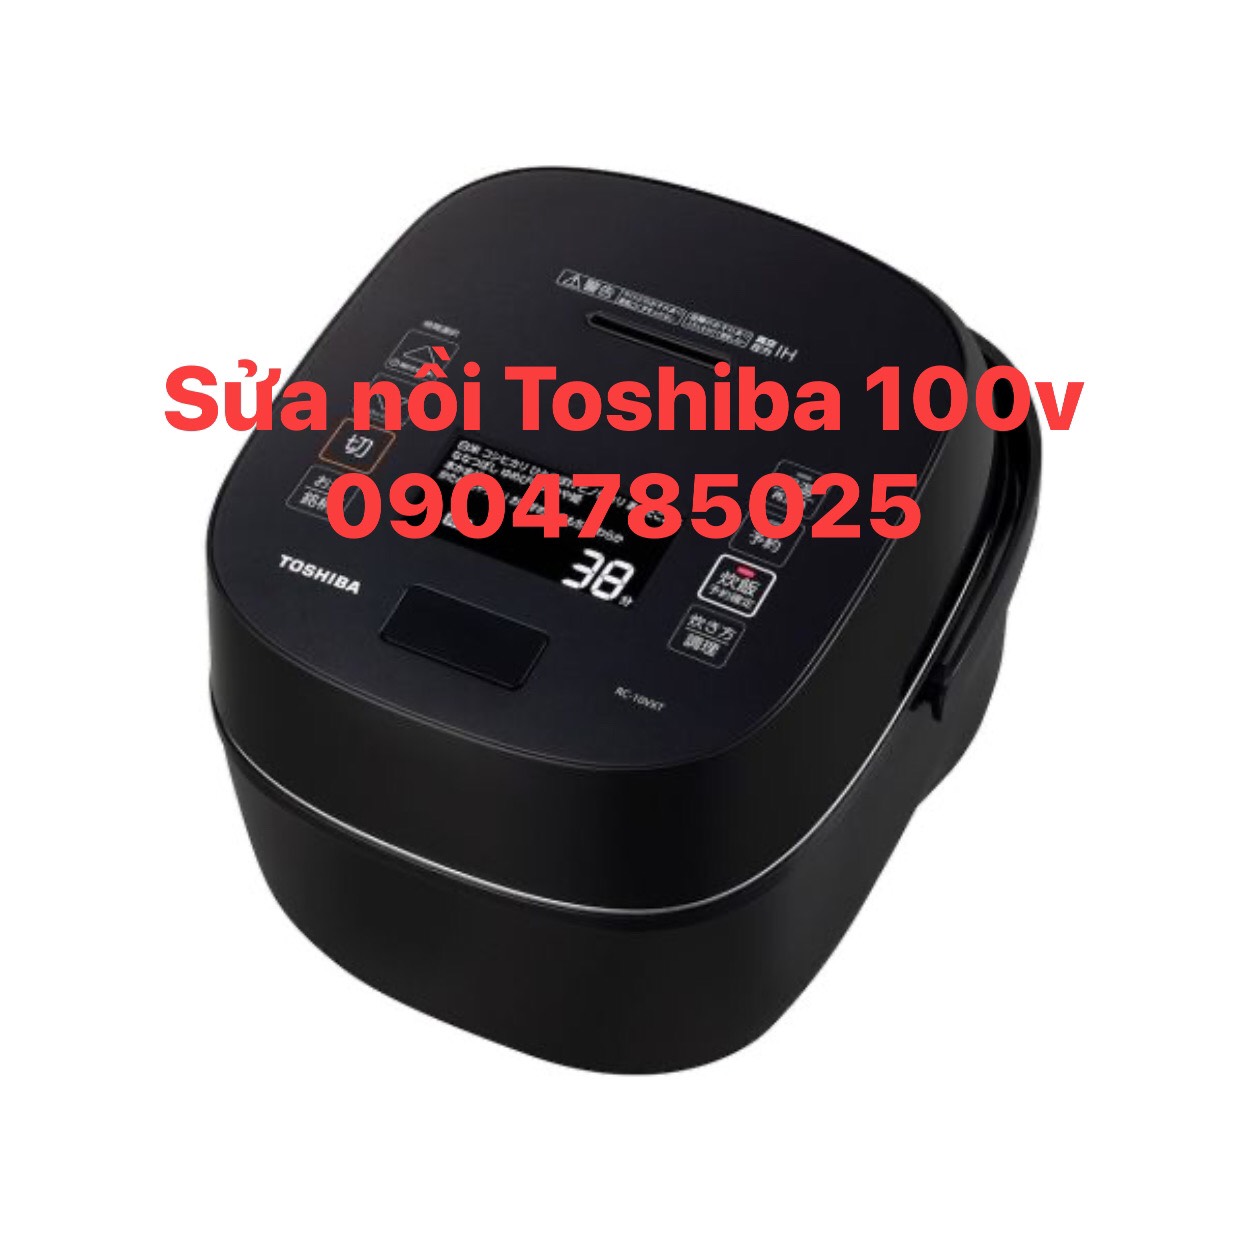 Cửa hàng sửa chữa nồi cơm điện  Toshiba 100v tại nhà Hà Nội